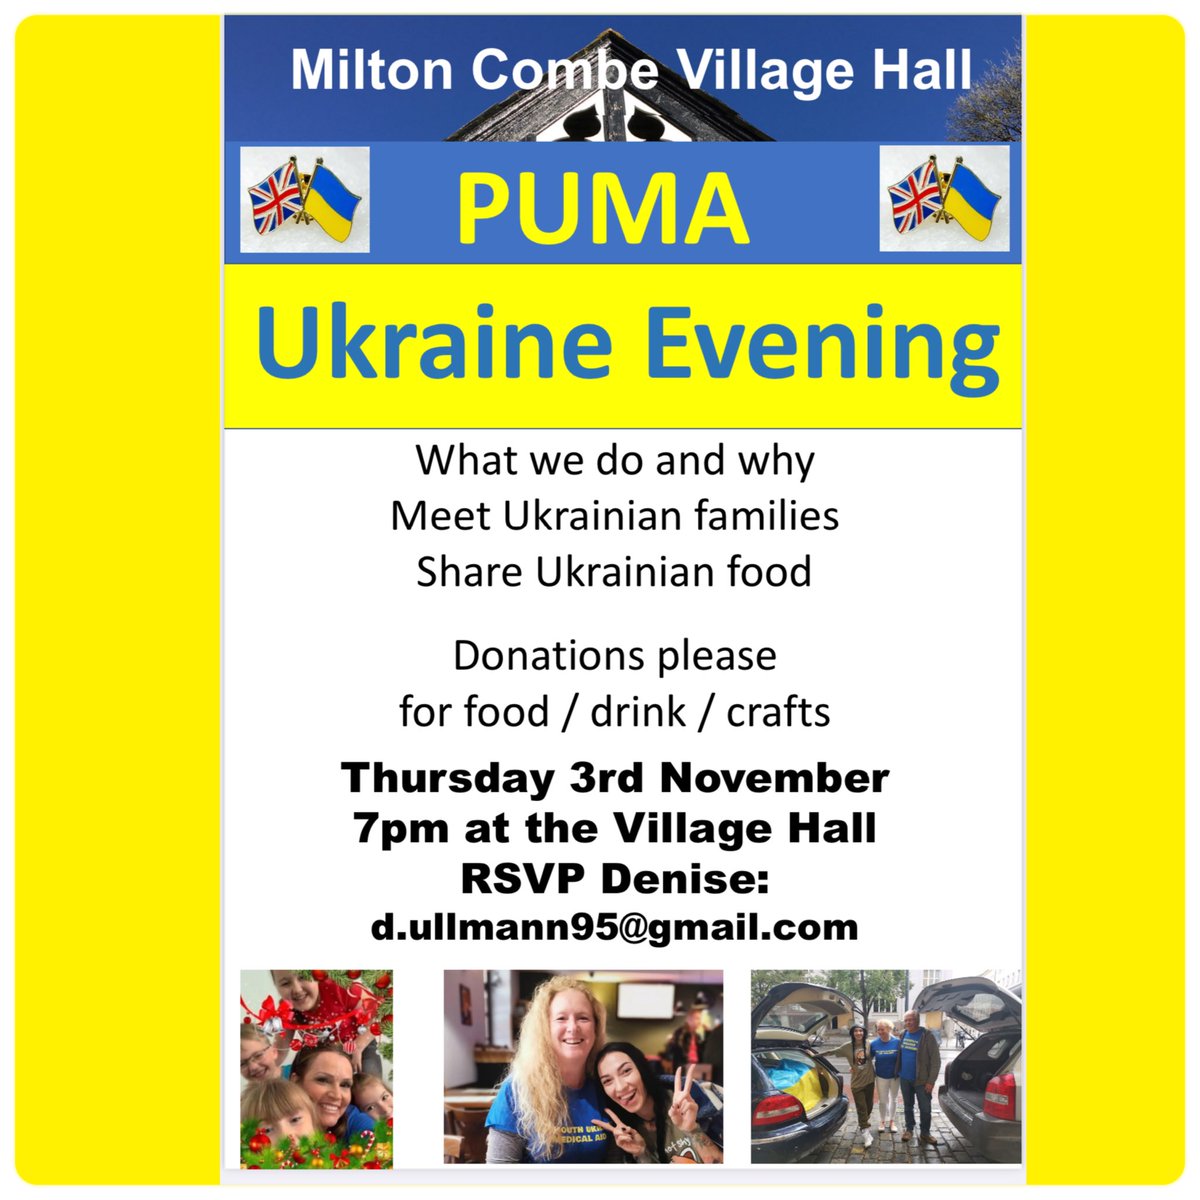 #Ukraine evening at #miltoncombe #villagehall #miltoncombedevon #yelverton #crapstone #tavistock #devon #plymouth #bucklandmonachorum @puma4ukraine #ukrainewar #helpukraine #westdevon